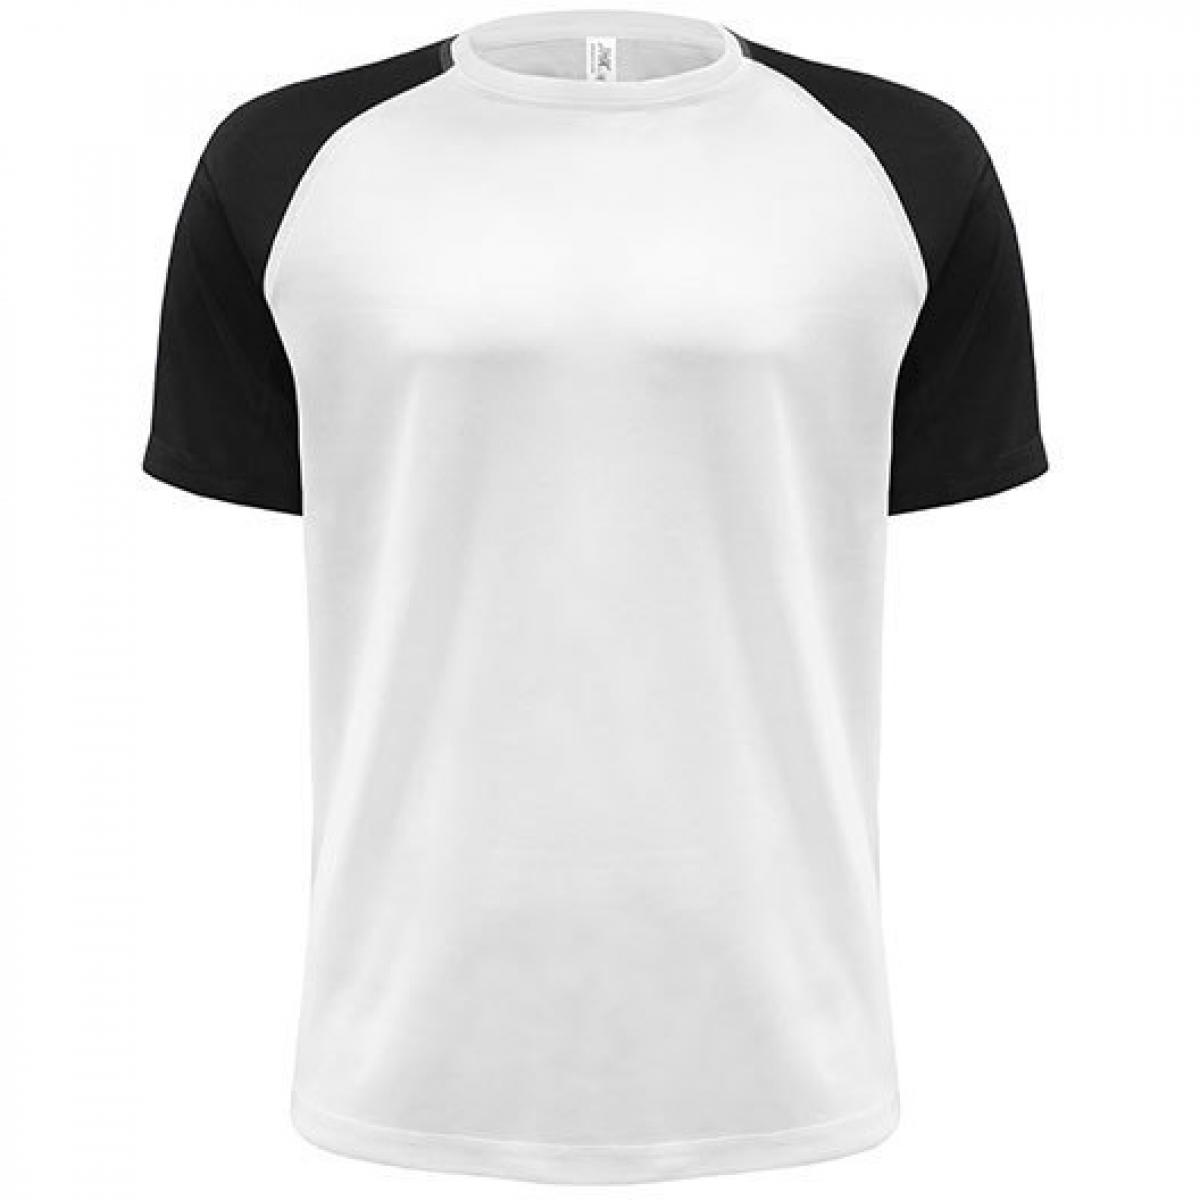 Gamegear Damen Trainings T-Shirt Funktionsshirt Sport Shirt